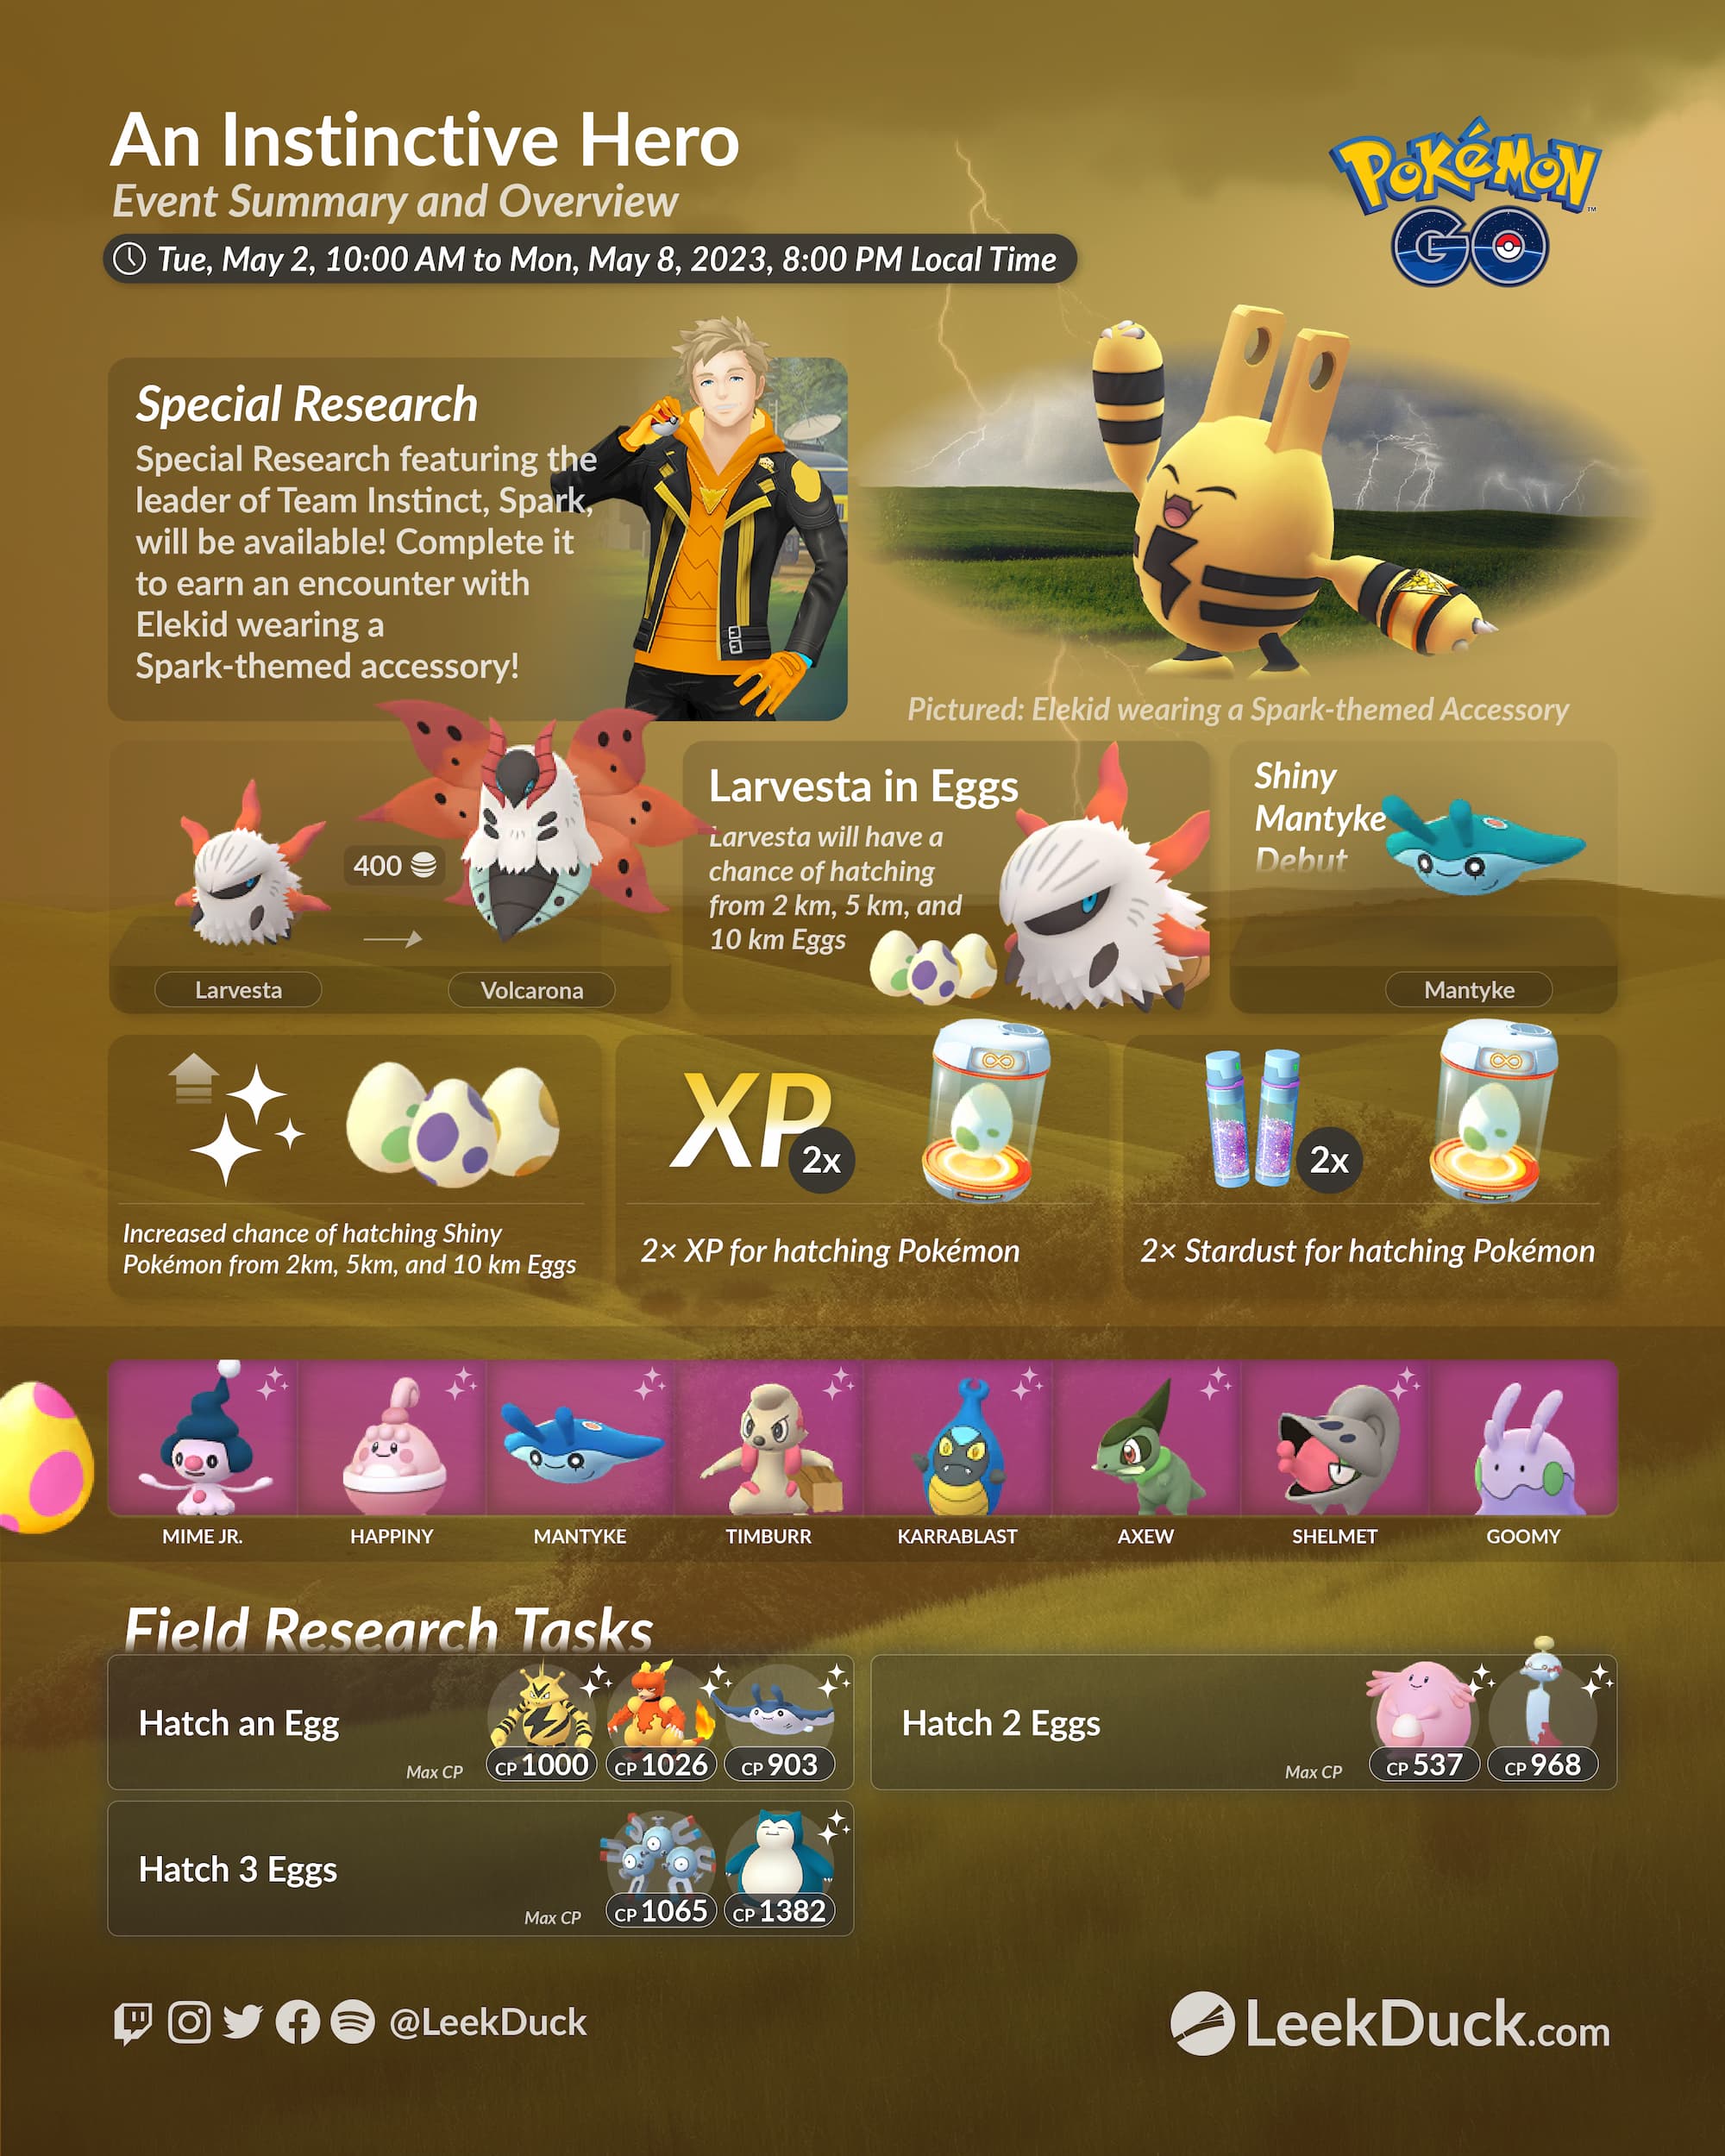 Raikou Pokémon Go - (Leia A Descrição) Lendário Pc 1700+ - Pokemon Go - DFG